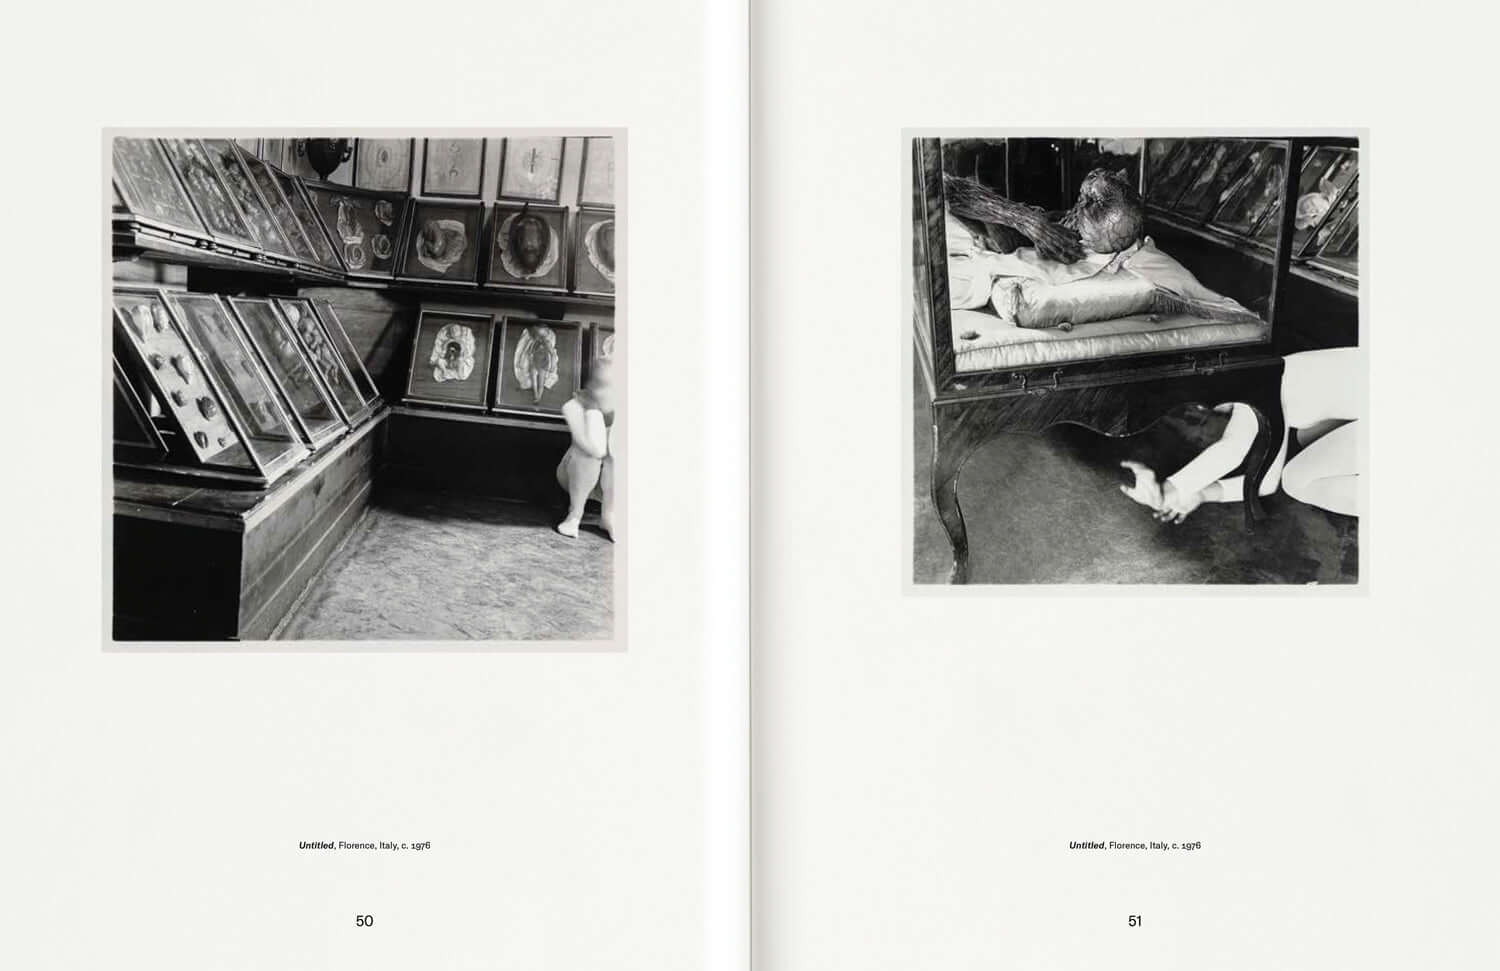 Francesca-Woodman-Alternate-Stories-Marian-Goodman-Gallery-visuel-2